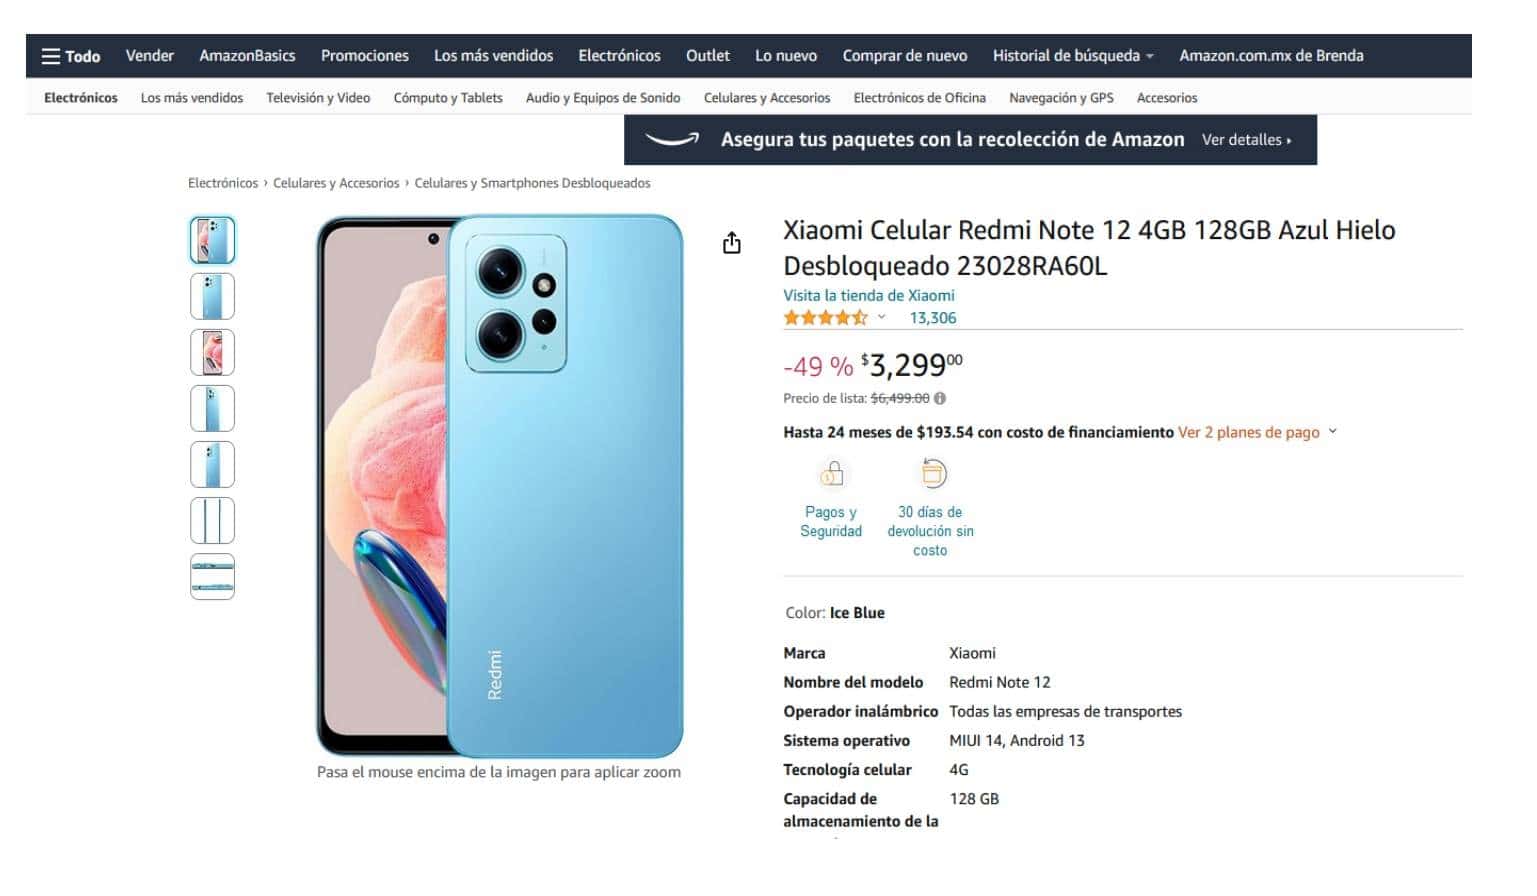 Cuánto cuesta el smartphone Xiaomi Redmi Note 12 en Amazon